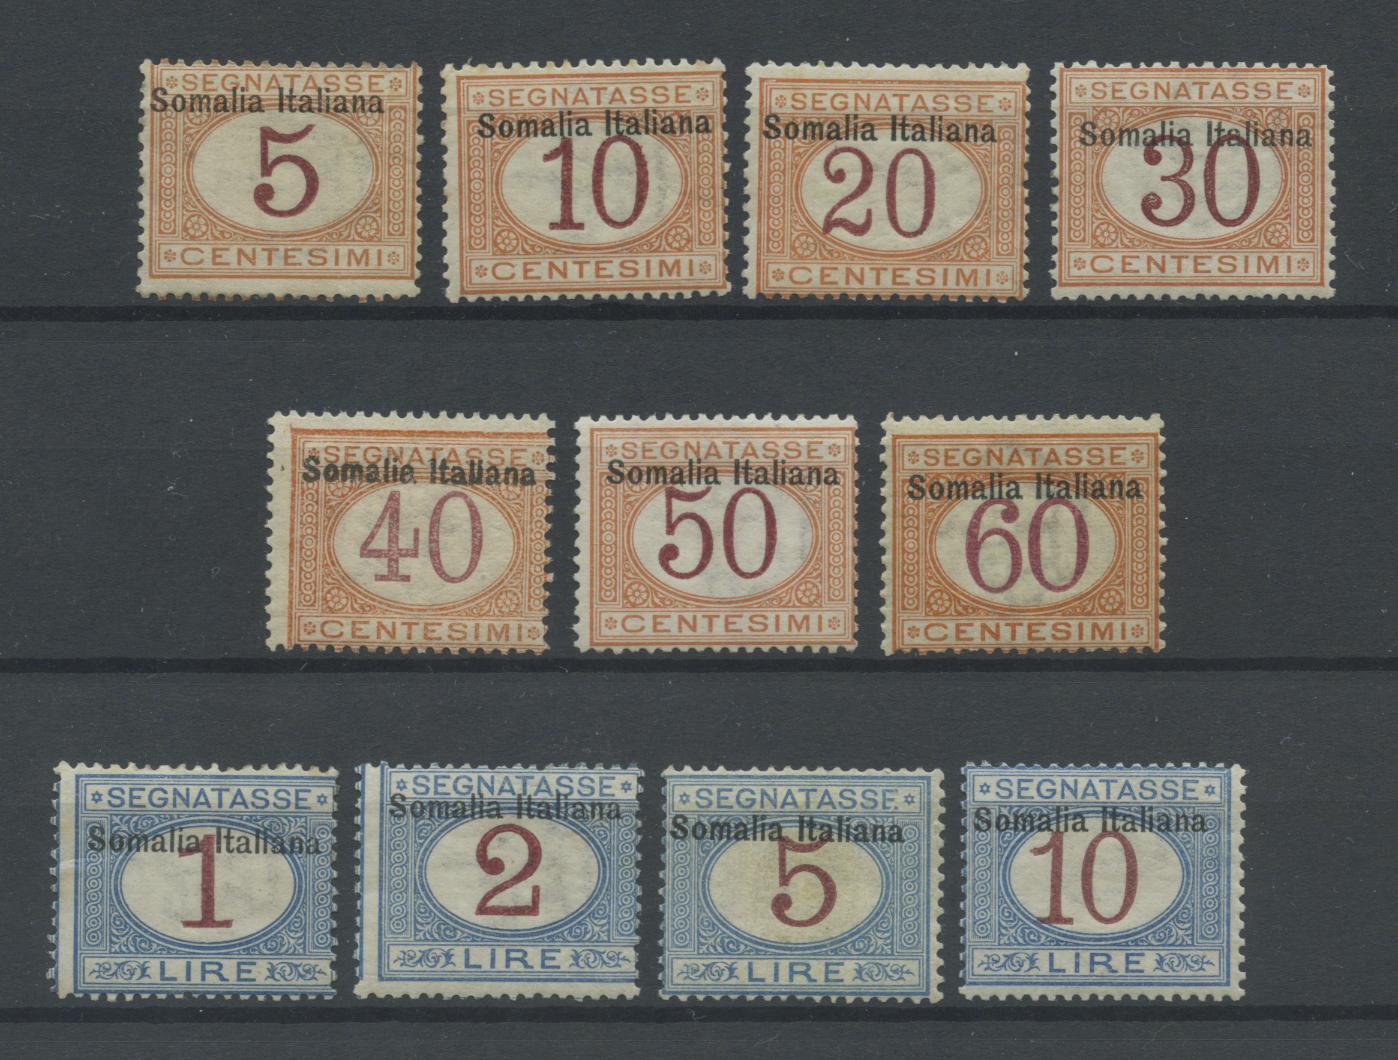 Scansione lotto: COLONIE SOMALIA 1909 TASSE 11V. 2 ** CENTRATO CERT.